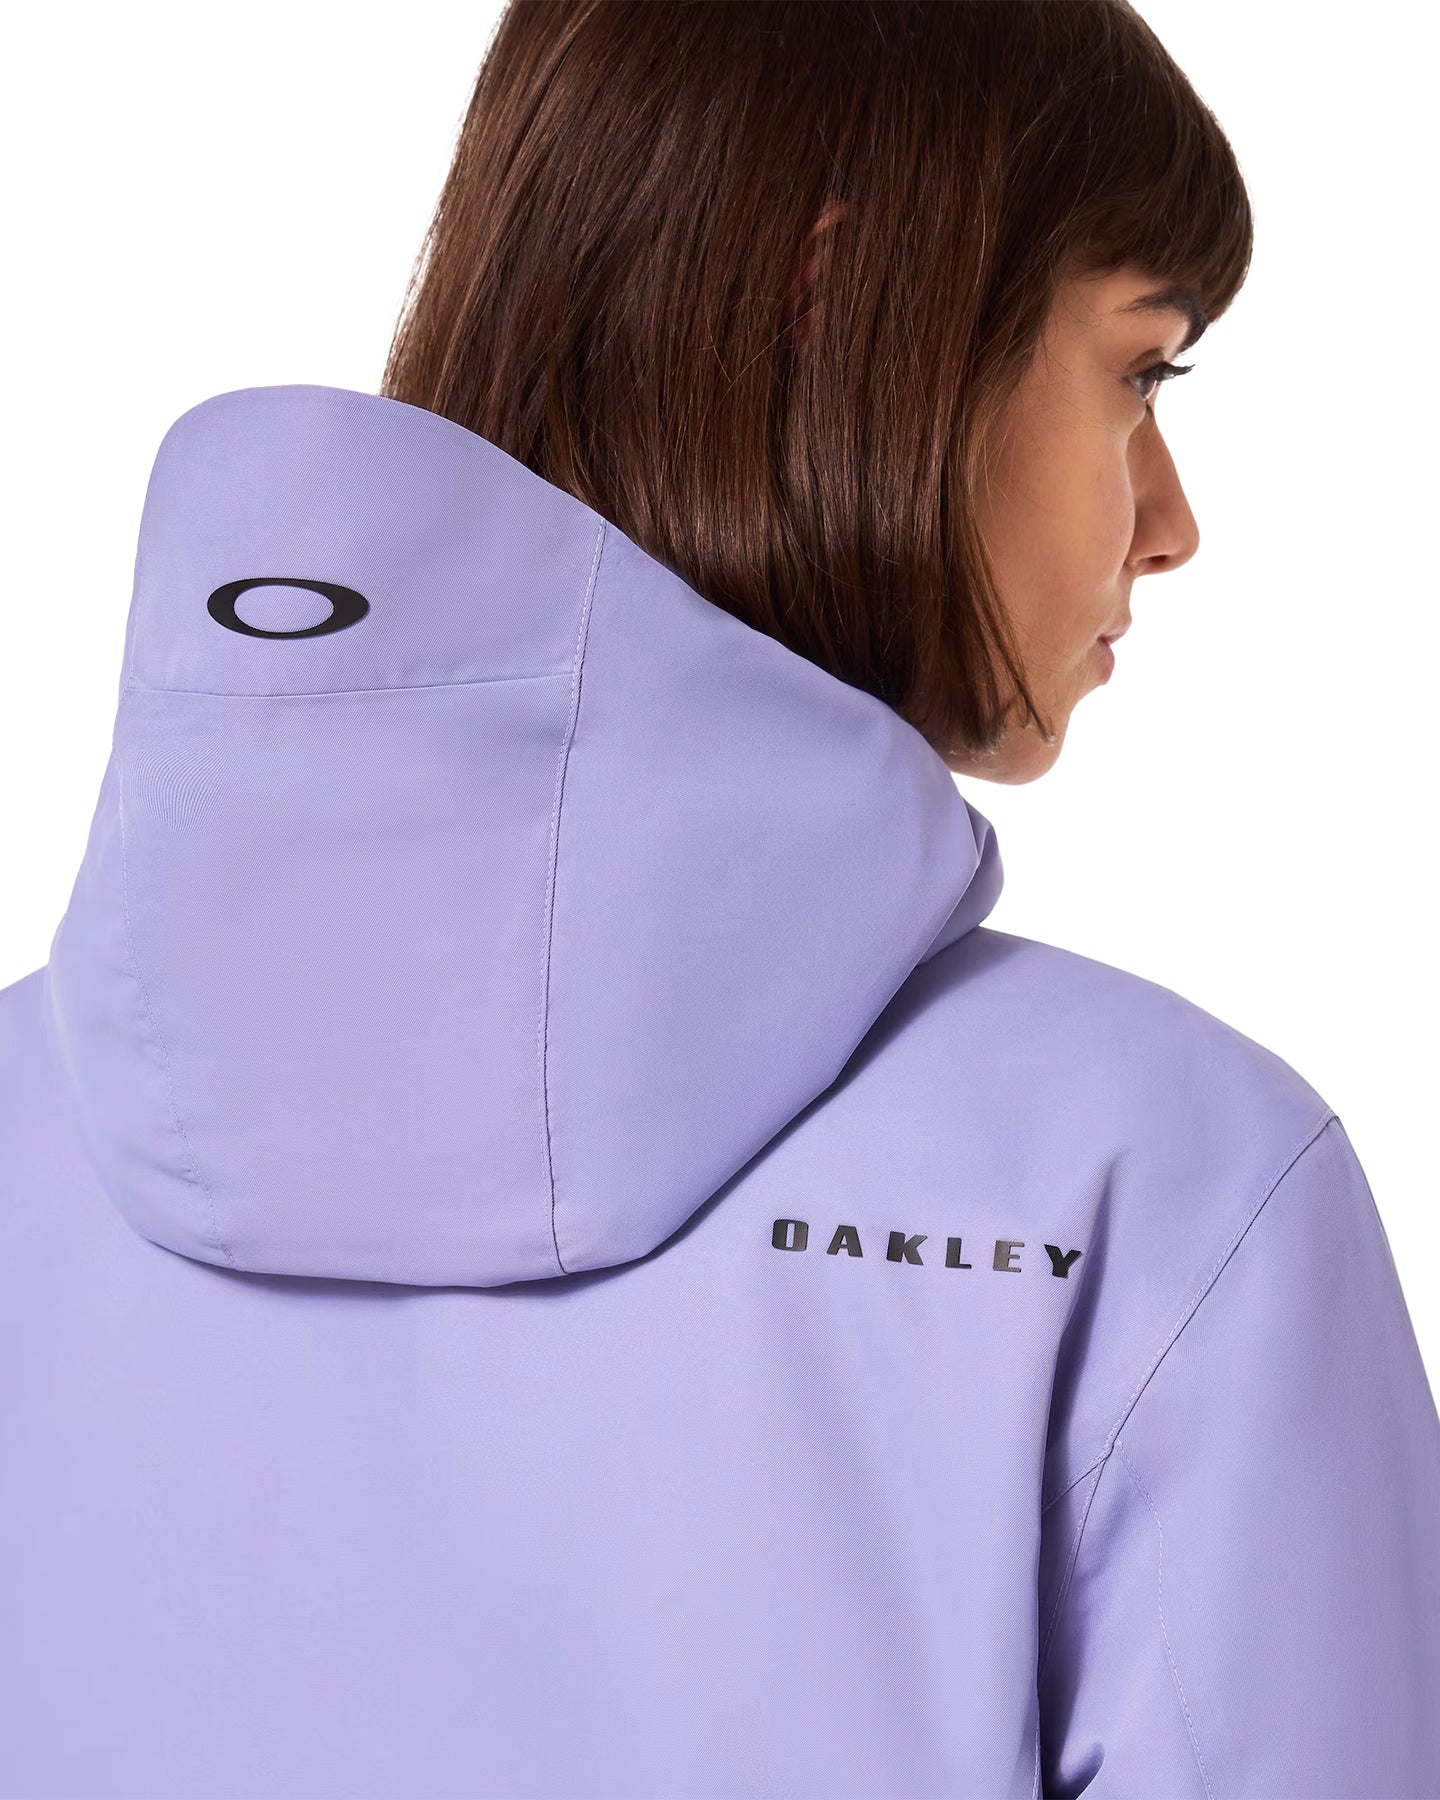 Oakley Women's Heavenly Rc Jacket - New Lilac Women's Snow Jackets - SnowSkiersWarehouse